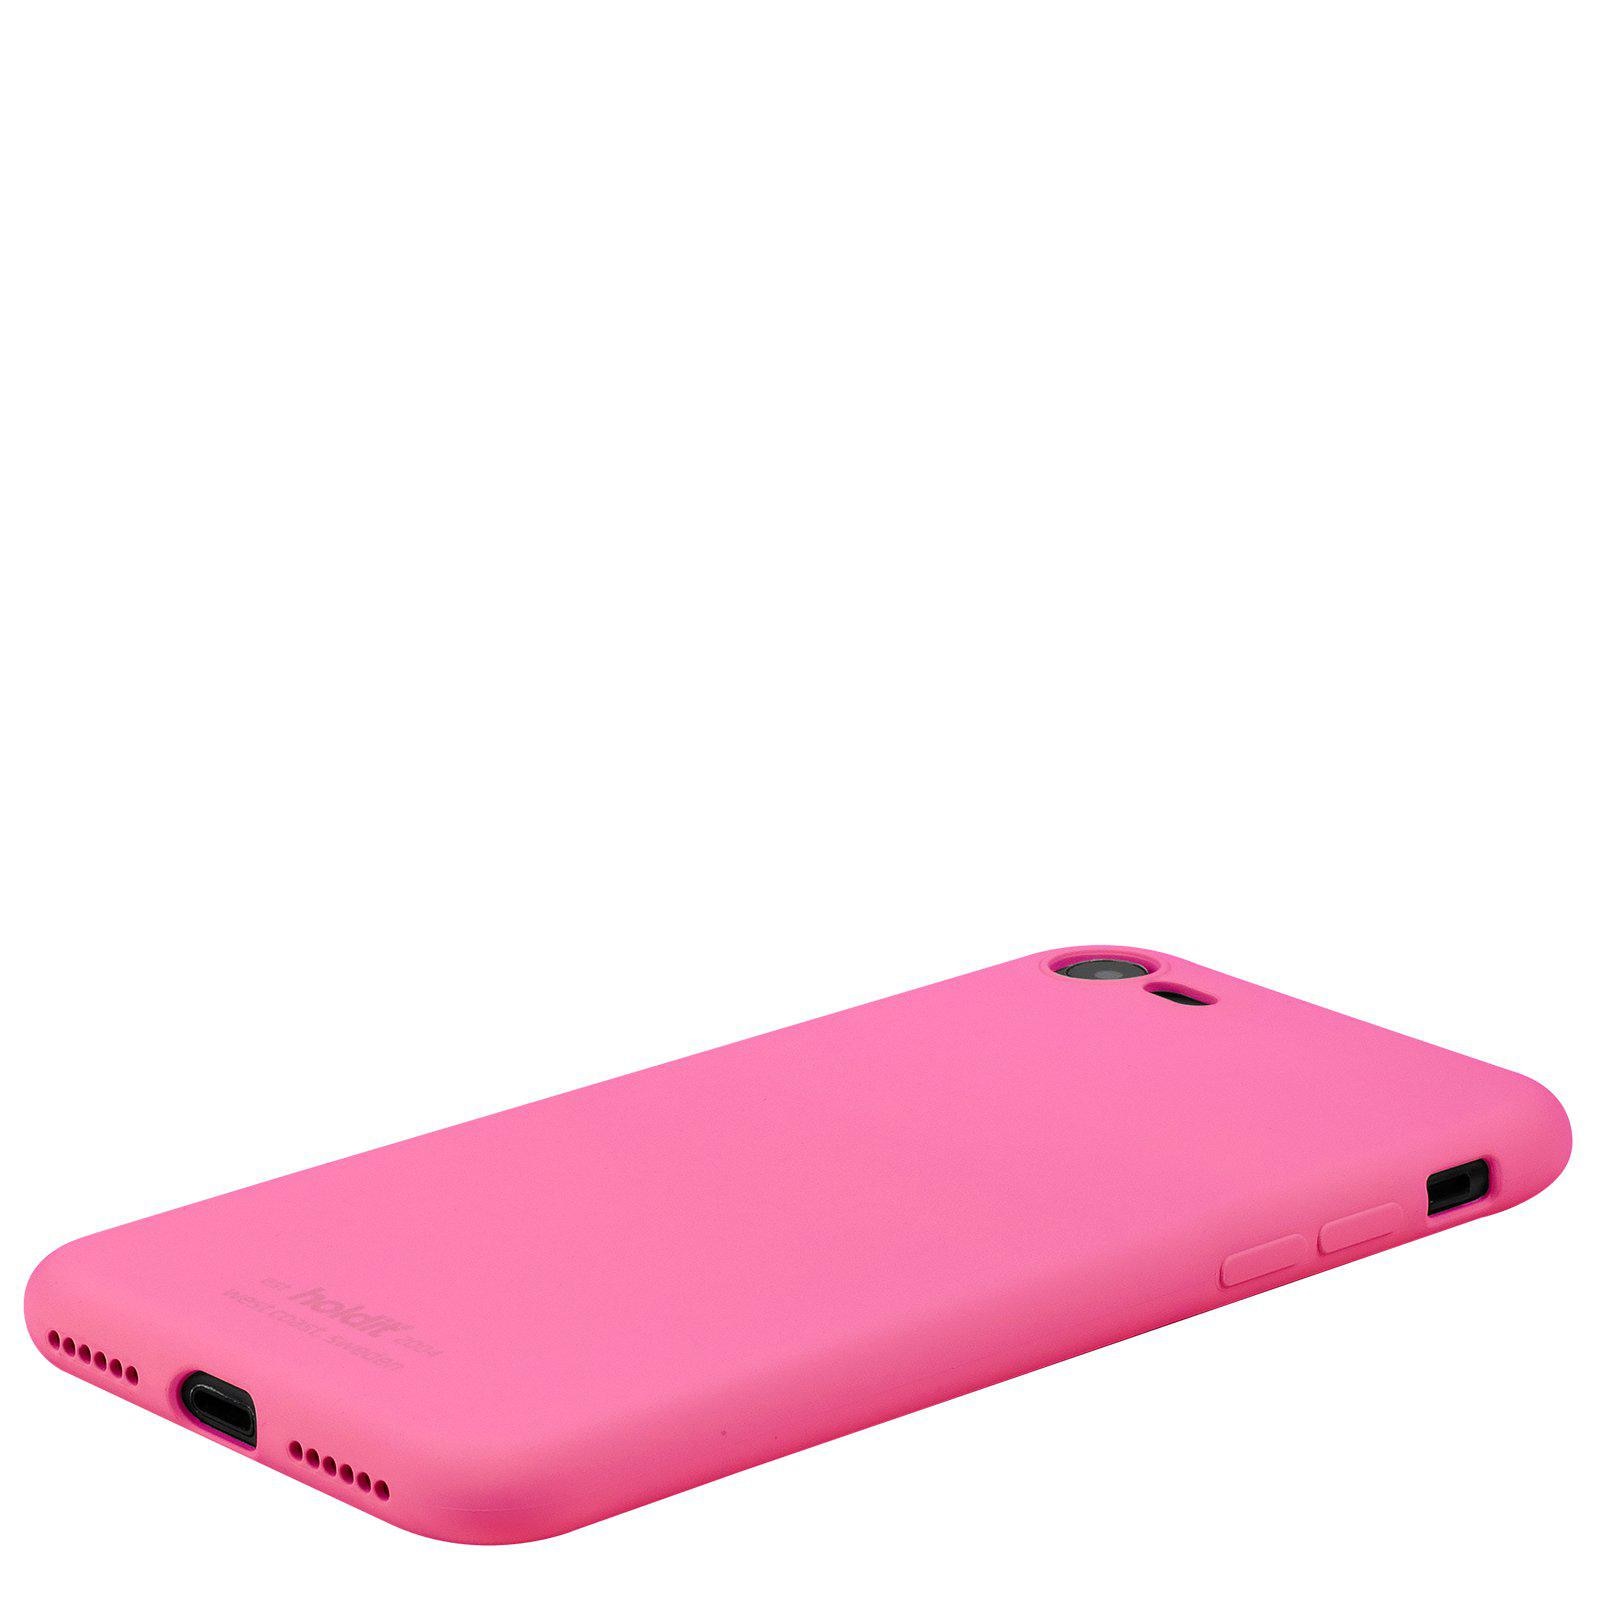 Coque en silicone iPhone SE (2020), Bright Pink